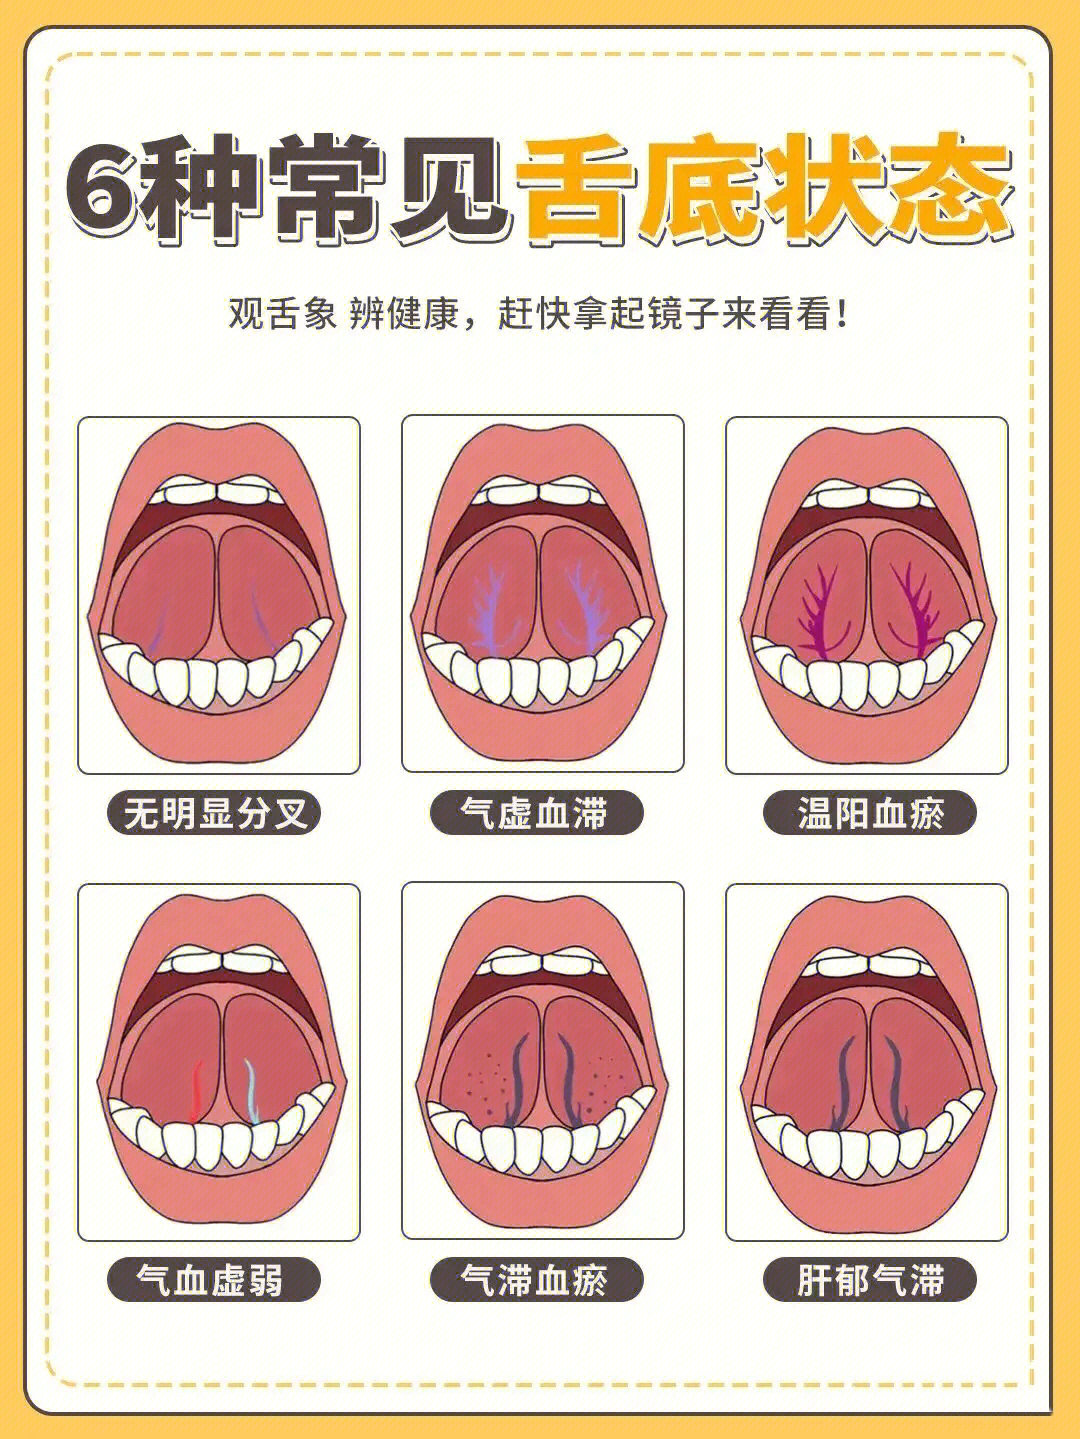 舌下静脉瘀堵四级图片